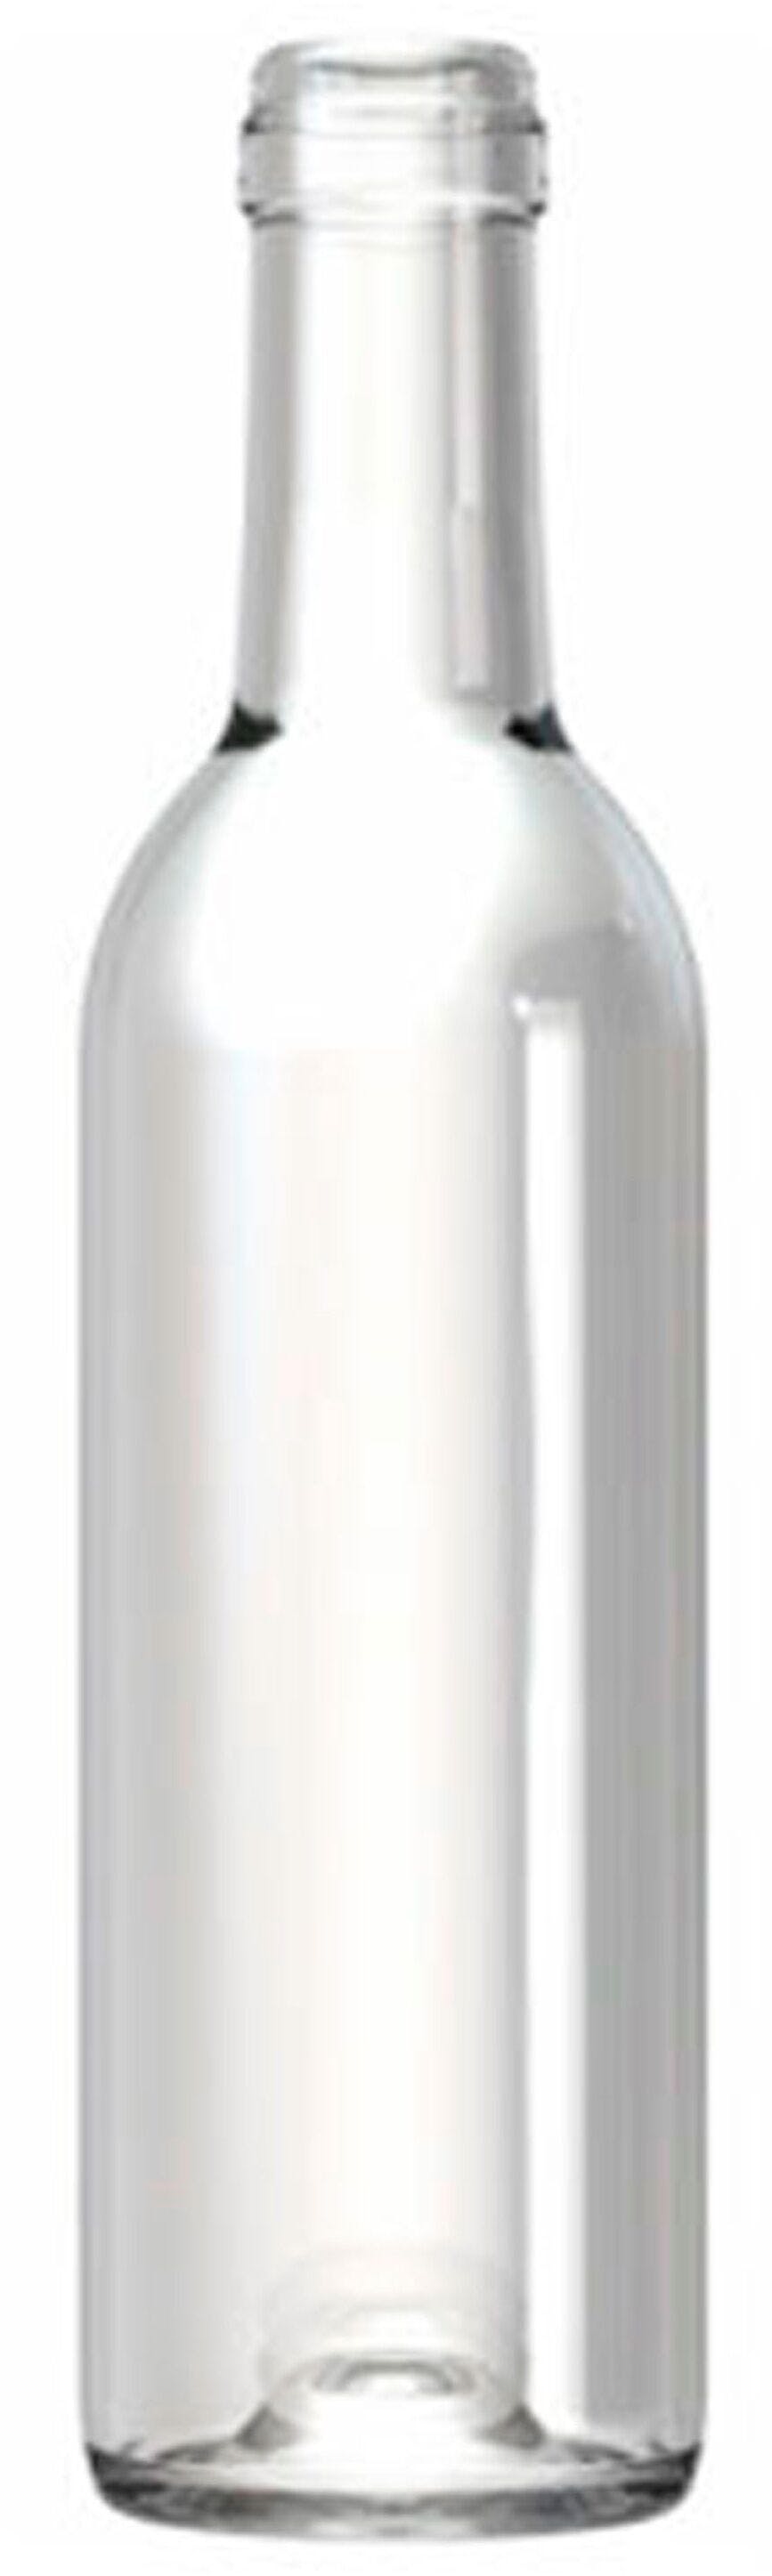 Bottiglia bordolese   ALLEGE 375 ml BG-Sughero